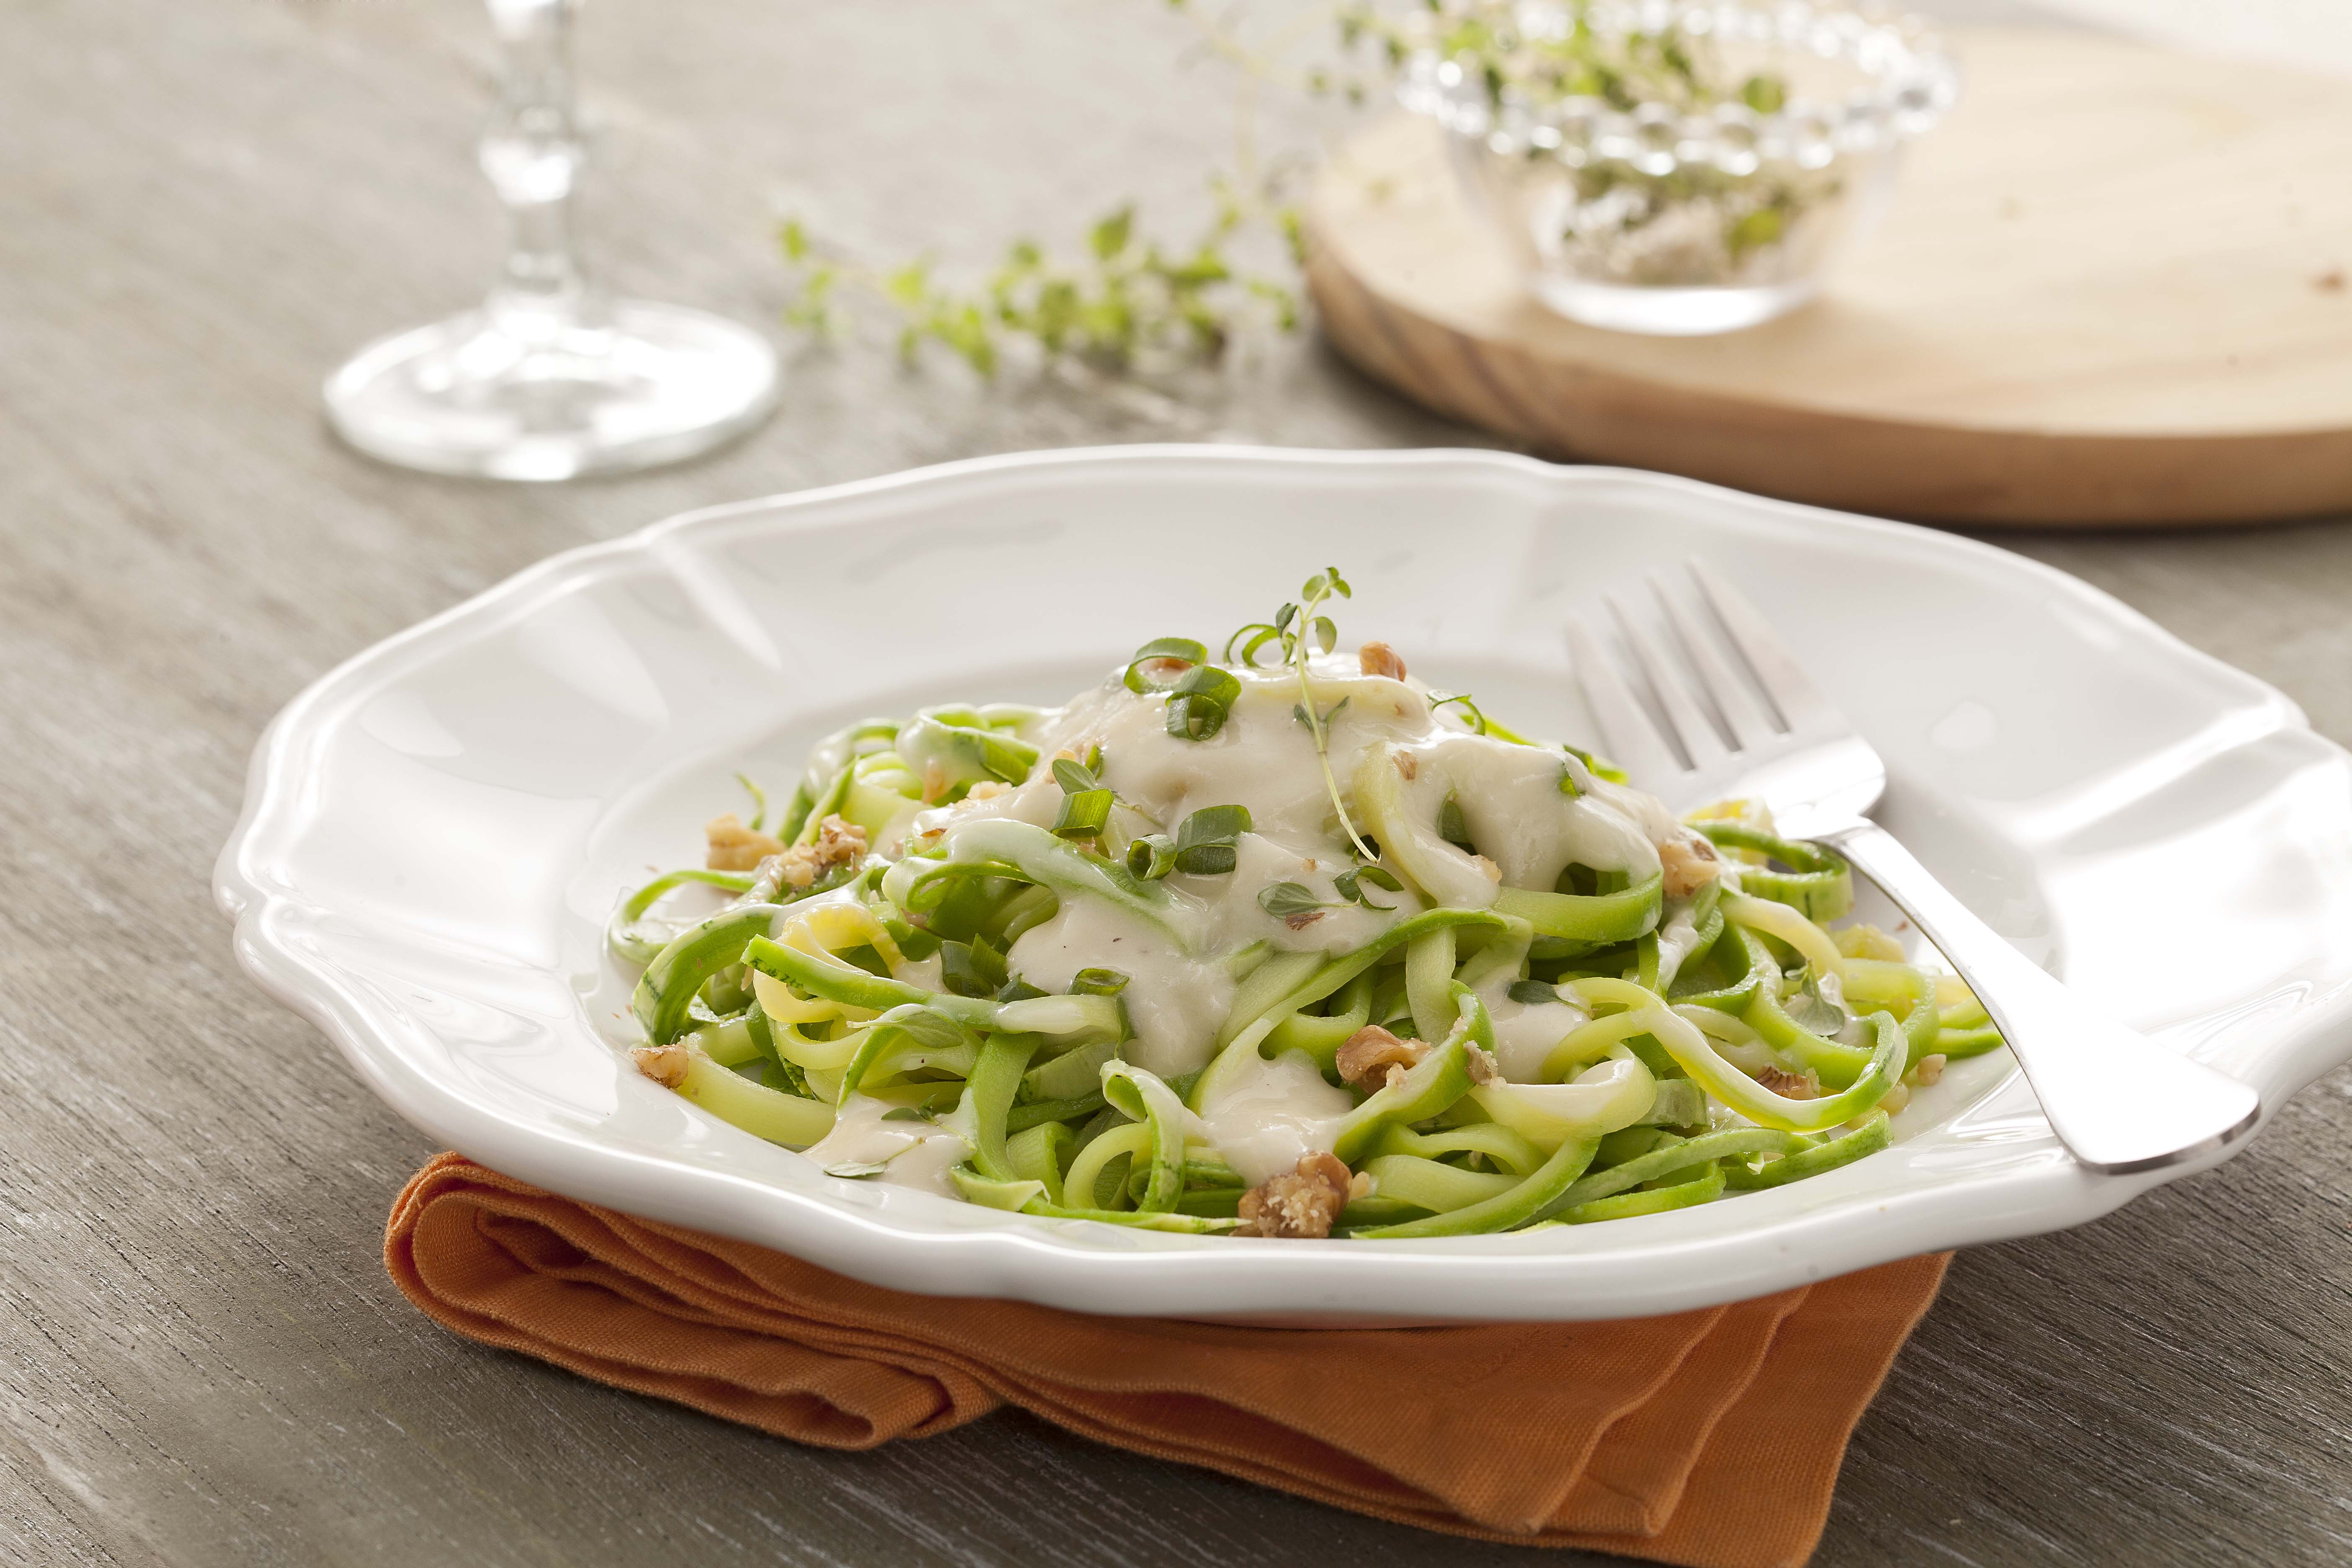 Fotografía en tonos verdes y blancos, en el centro un plato blanco profundo con espaguetis de calabacín verde en el interior con salsa blanca. Debajo del plato hay una servilleta de tela naranja sobre una mesa de madera.